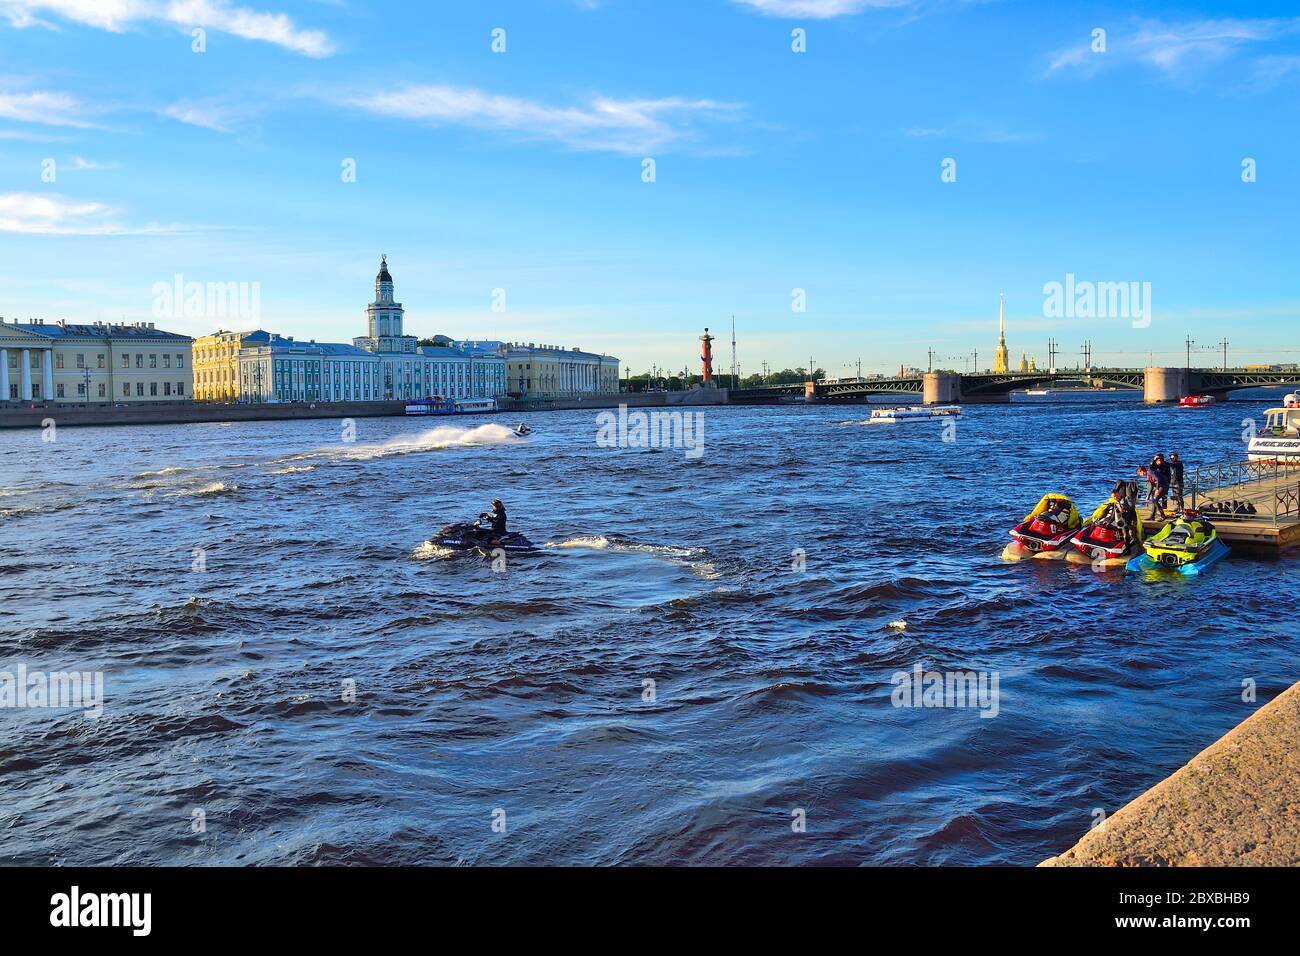 Saint-Pétersbourg, Russie - 13 juin 2019 : excursions en bateau et excursions pour les touristes sur la Neva par le lancement et le jet ski. Jeunes gens en jet-ski ou wa Banque D'Images